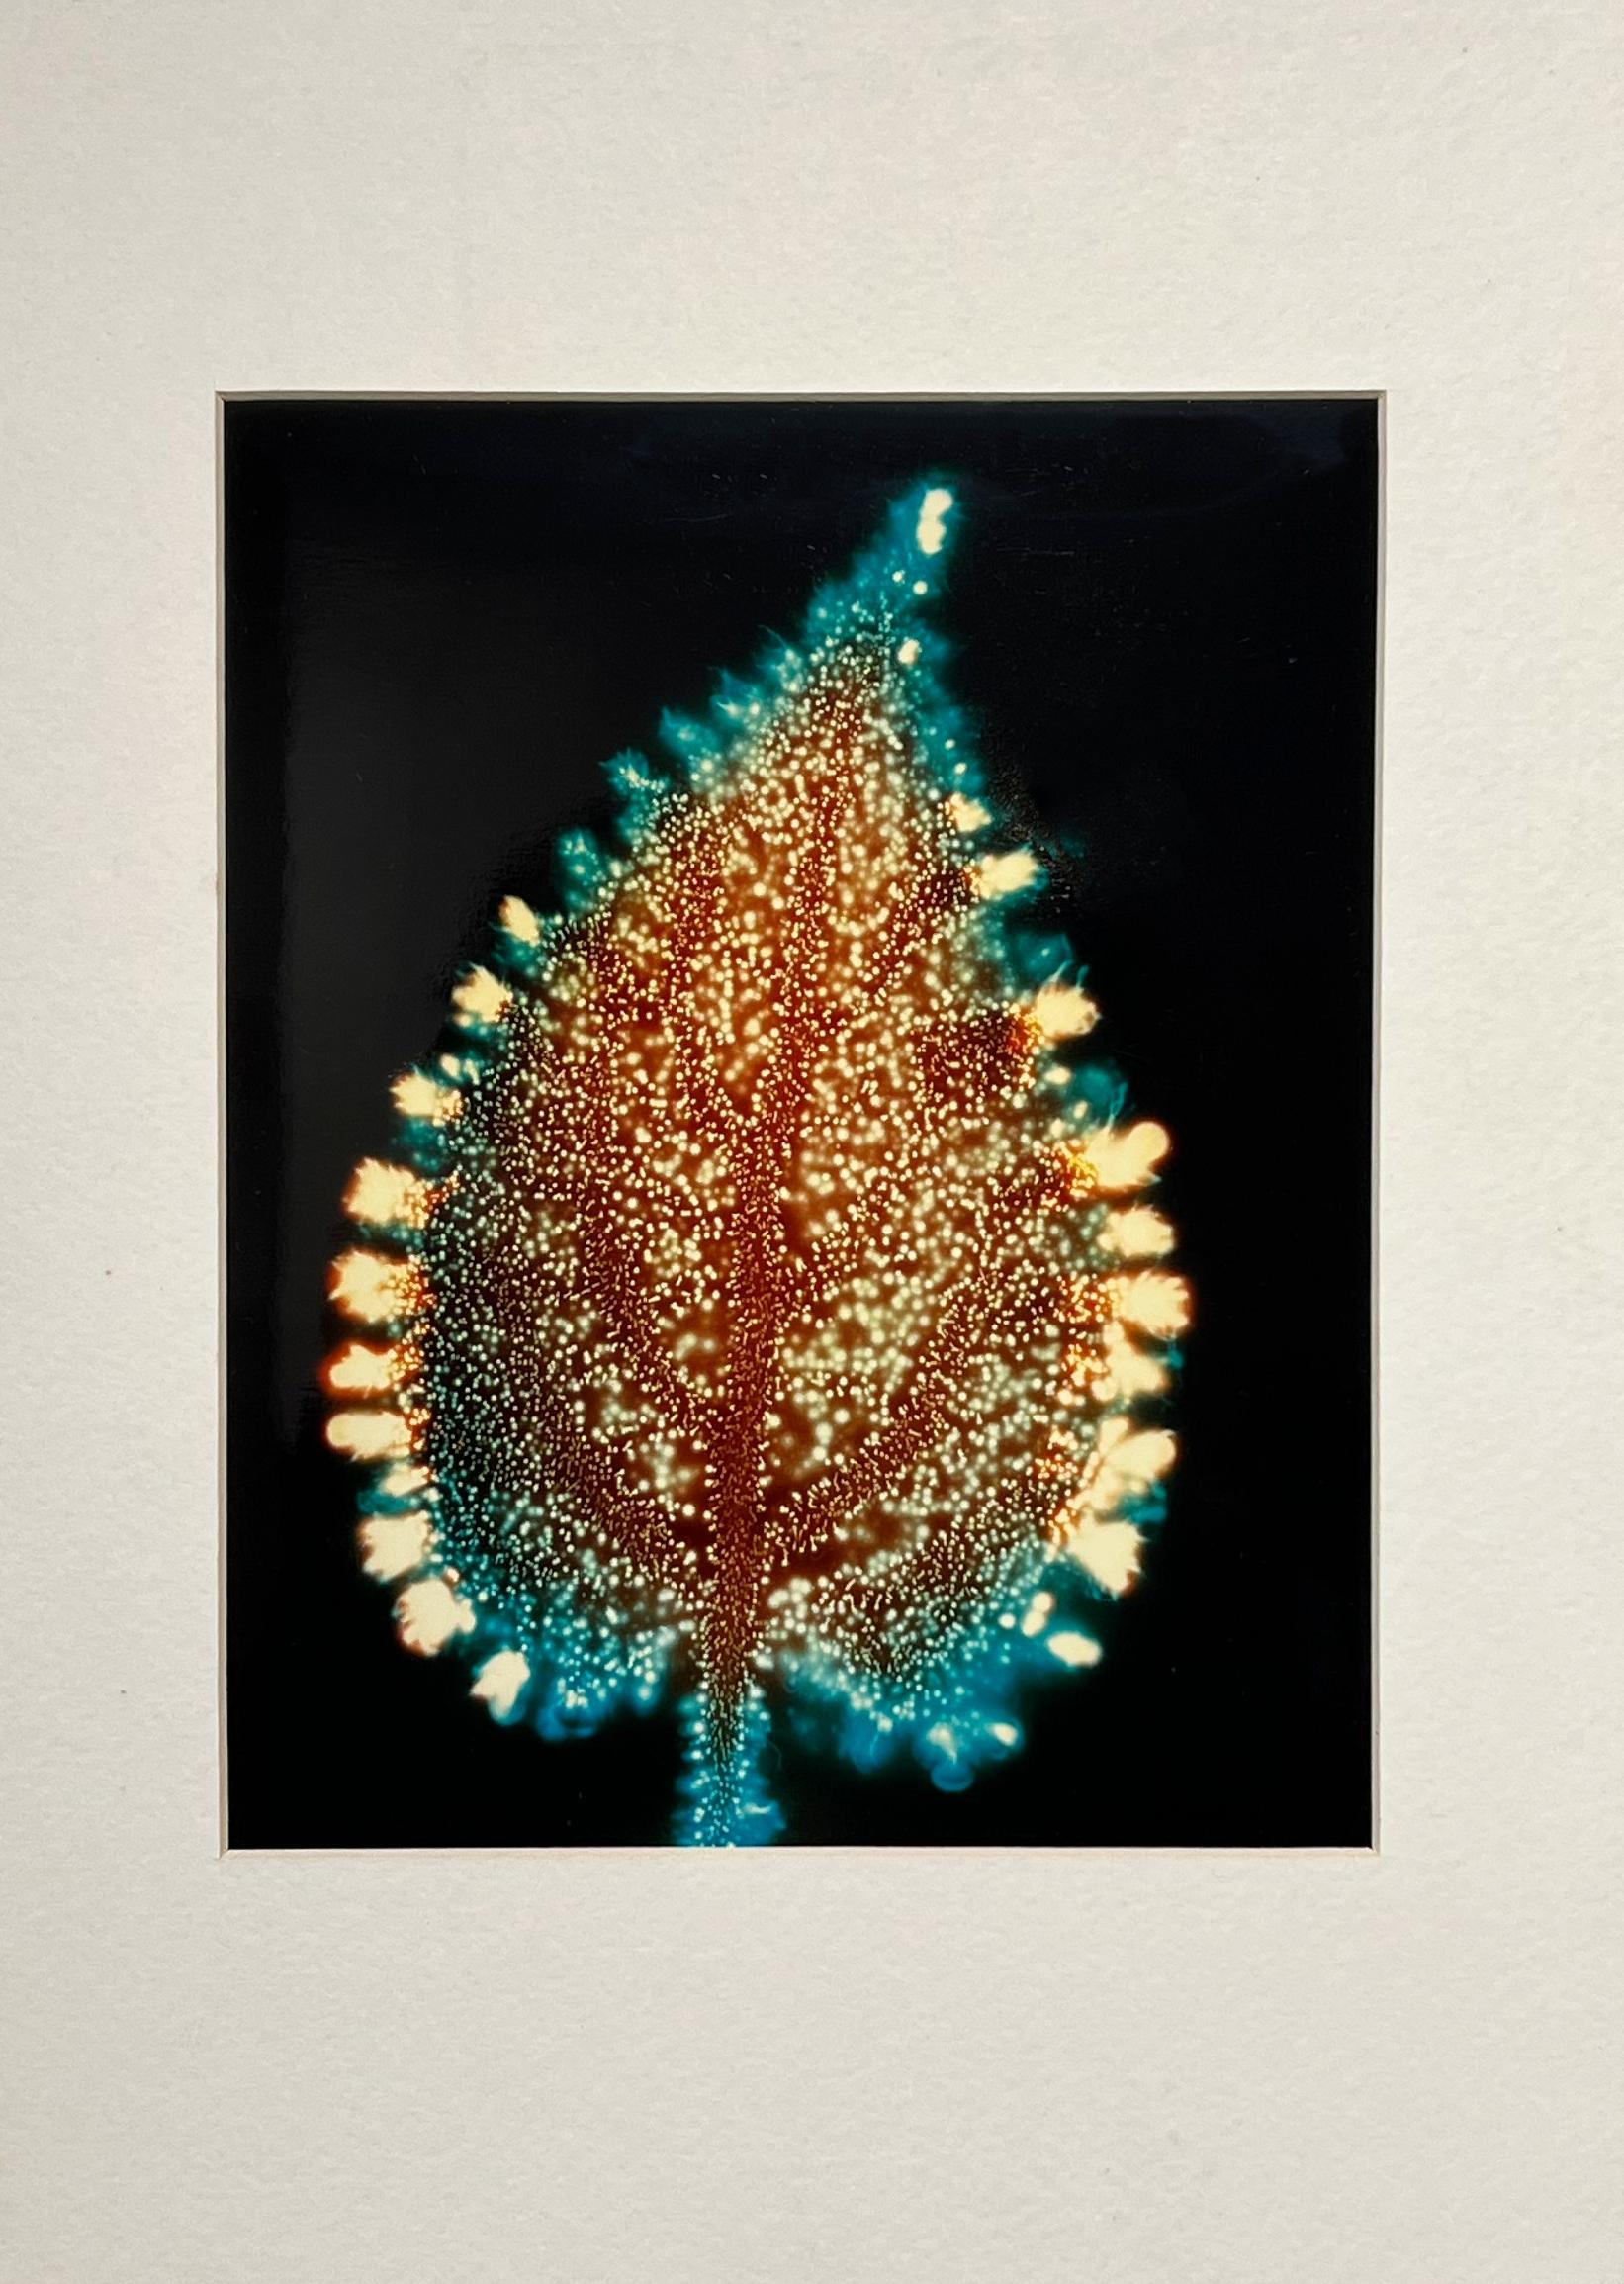 Color Photograph Fred Langford Edwards - « Petite feuille », photographie de Kirlean, photographie électronique, pièce unique, Botany